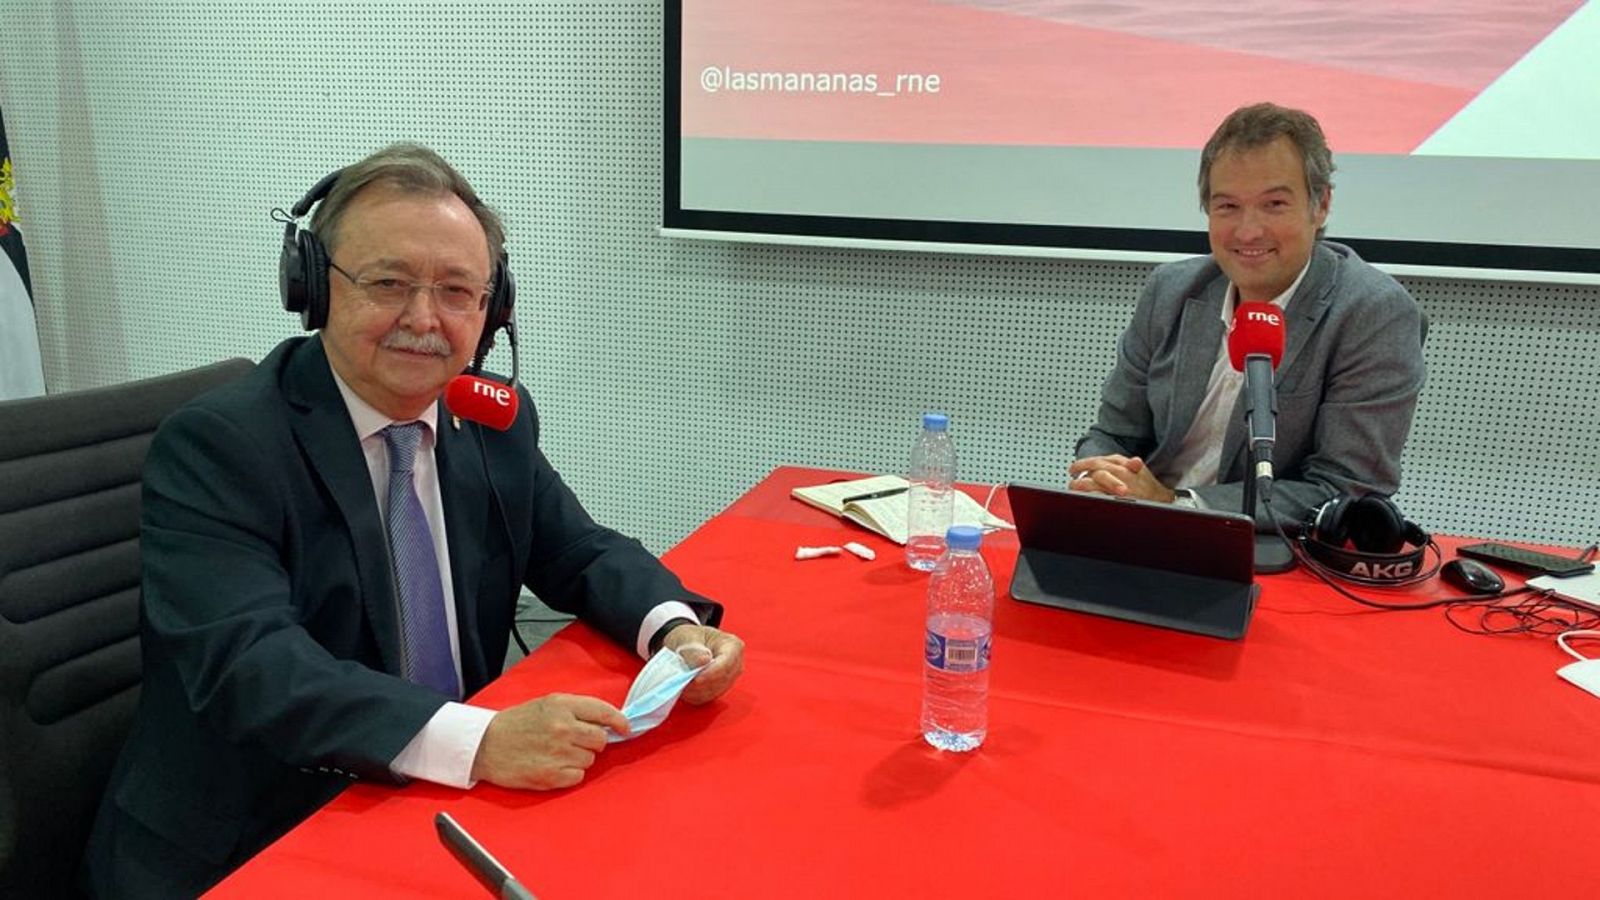 Las mañanas de RNE con Íñigo Alfonso - Juan Jesús Vivas, presidente de Ceuta: "Es un paso para establecer un clima de normalidad" - Escuchar ahora